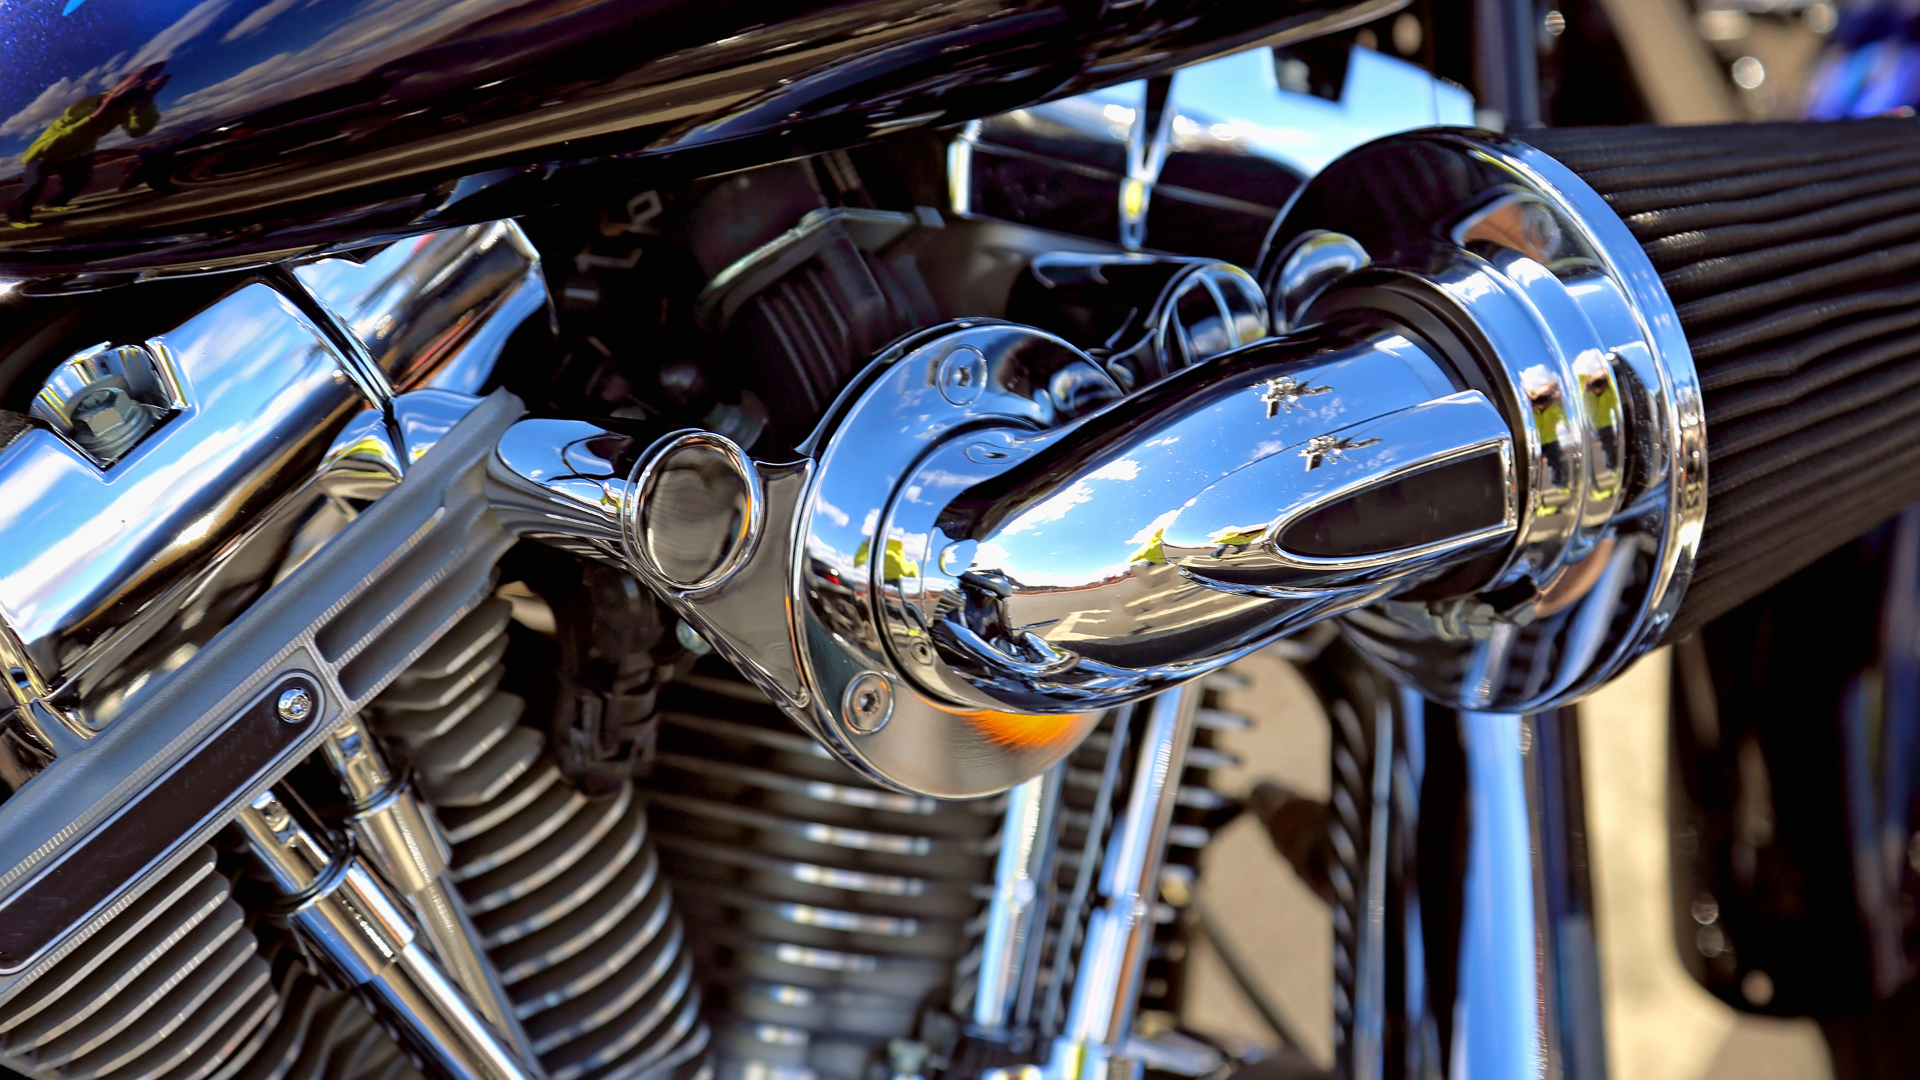 Migliora le tue abilità: iscriviti a un corso di meccanico Harley Davidson - moto - Racext 27